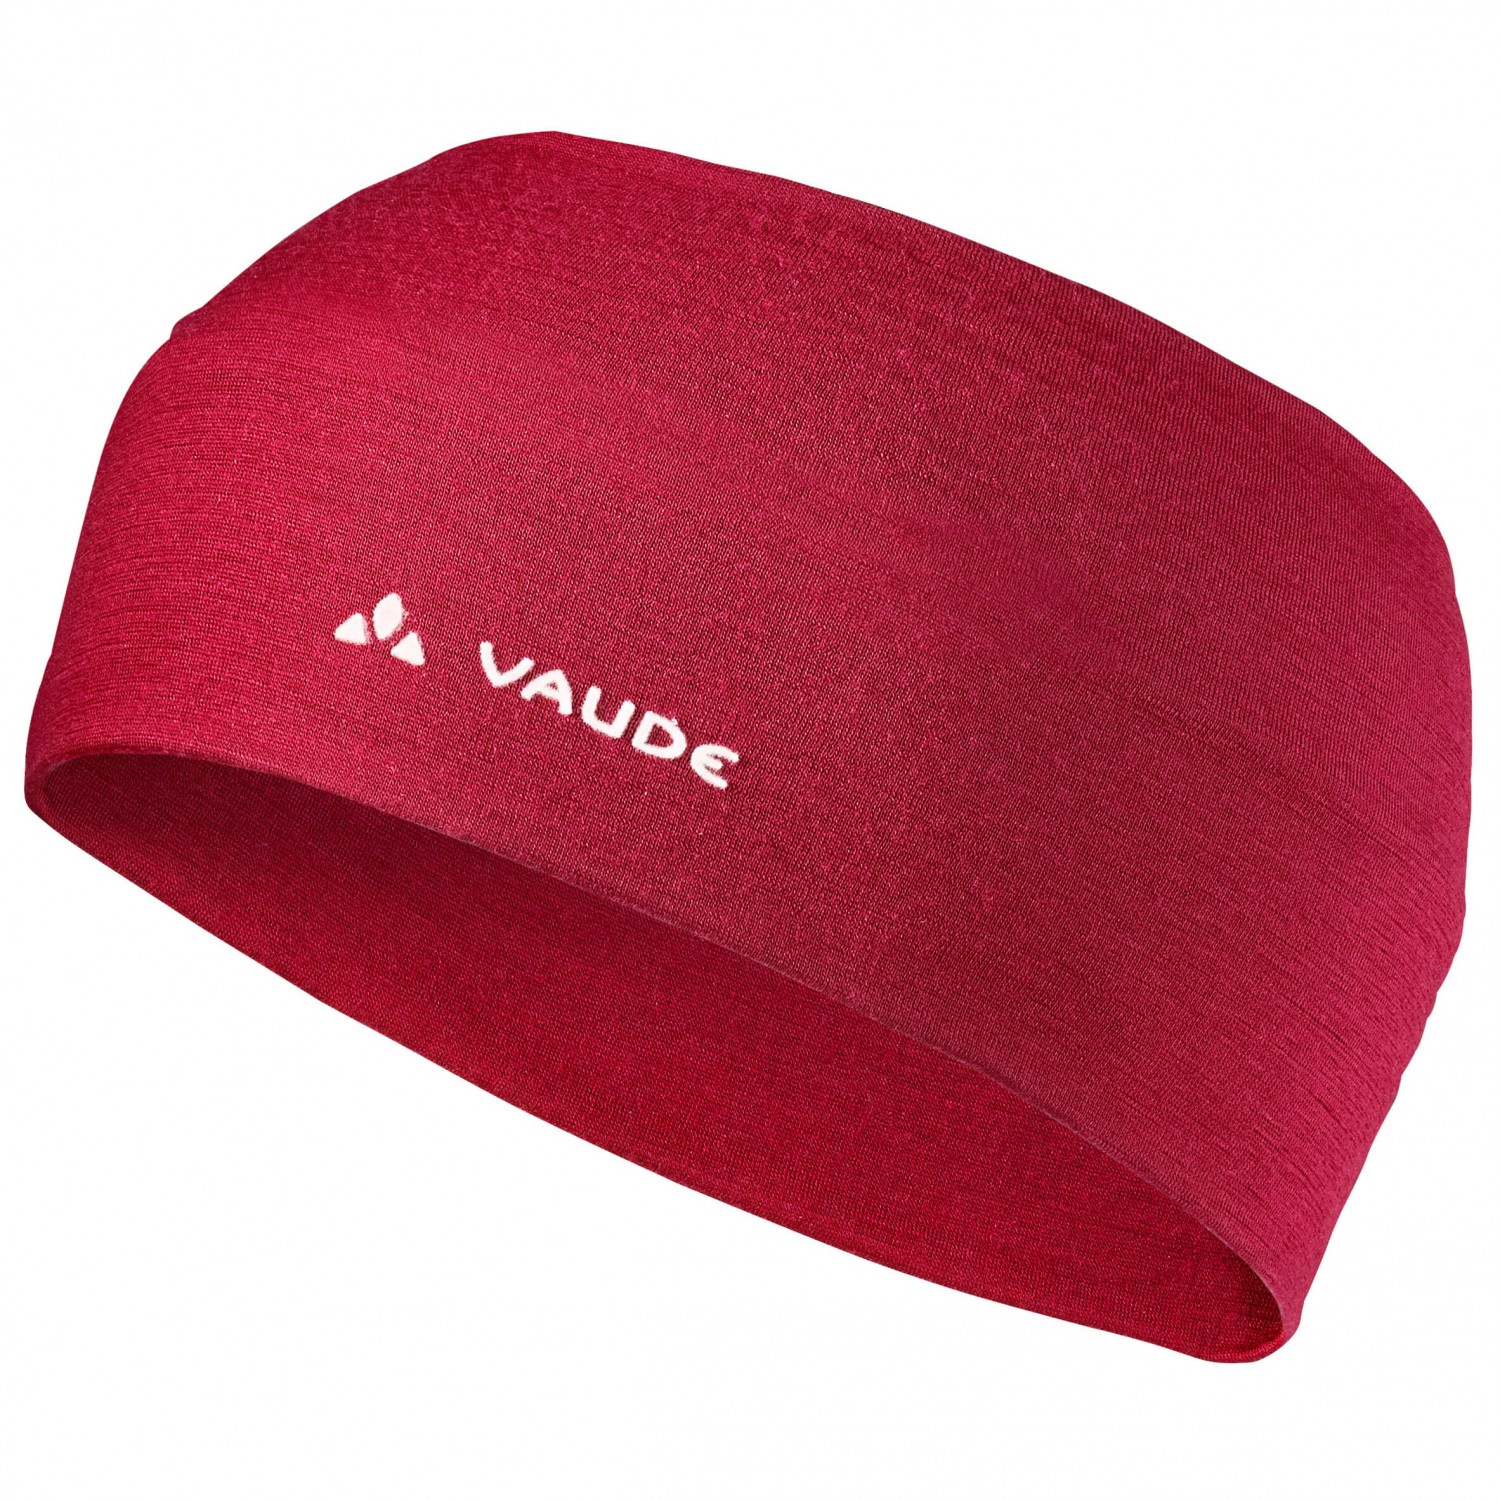 Повязка на голову Vaude Cassons Merino Headband, цвет Dark Indian Red повязка buff fastwick headband edur blue